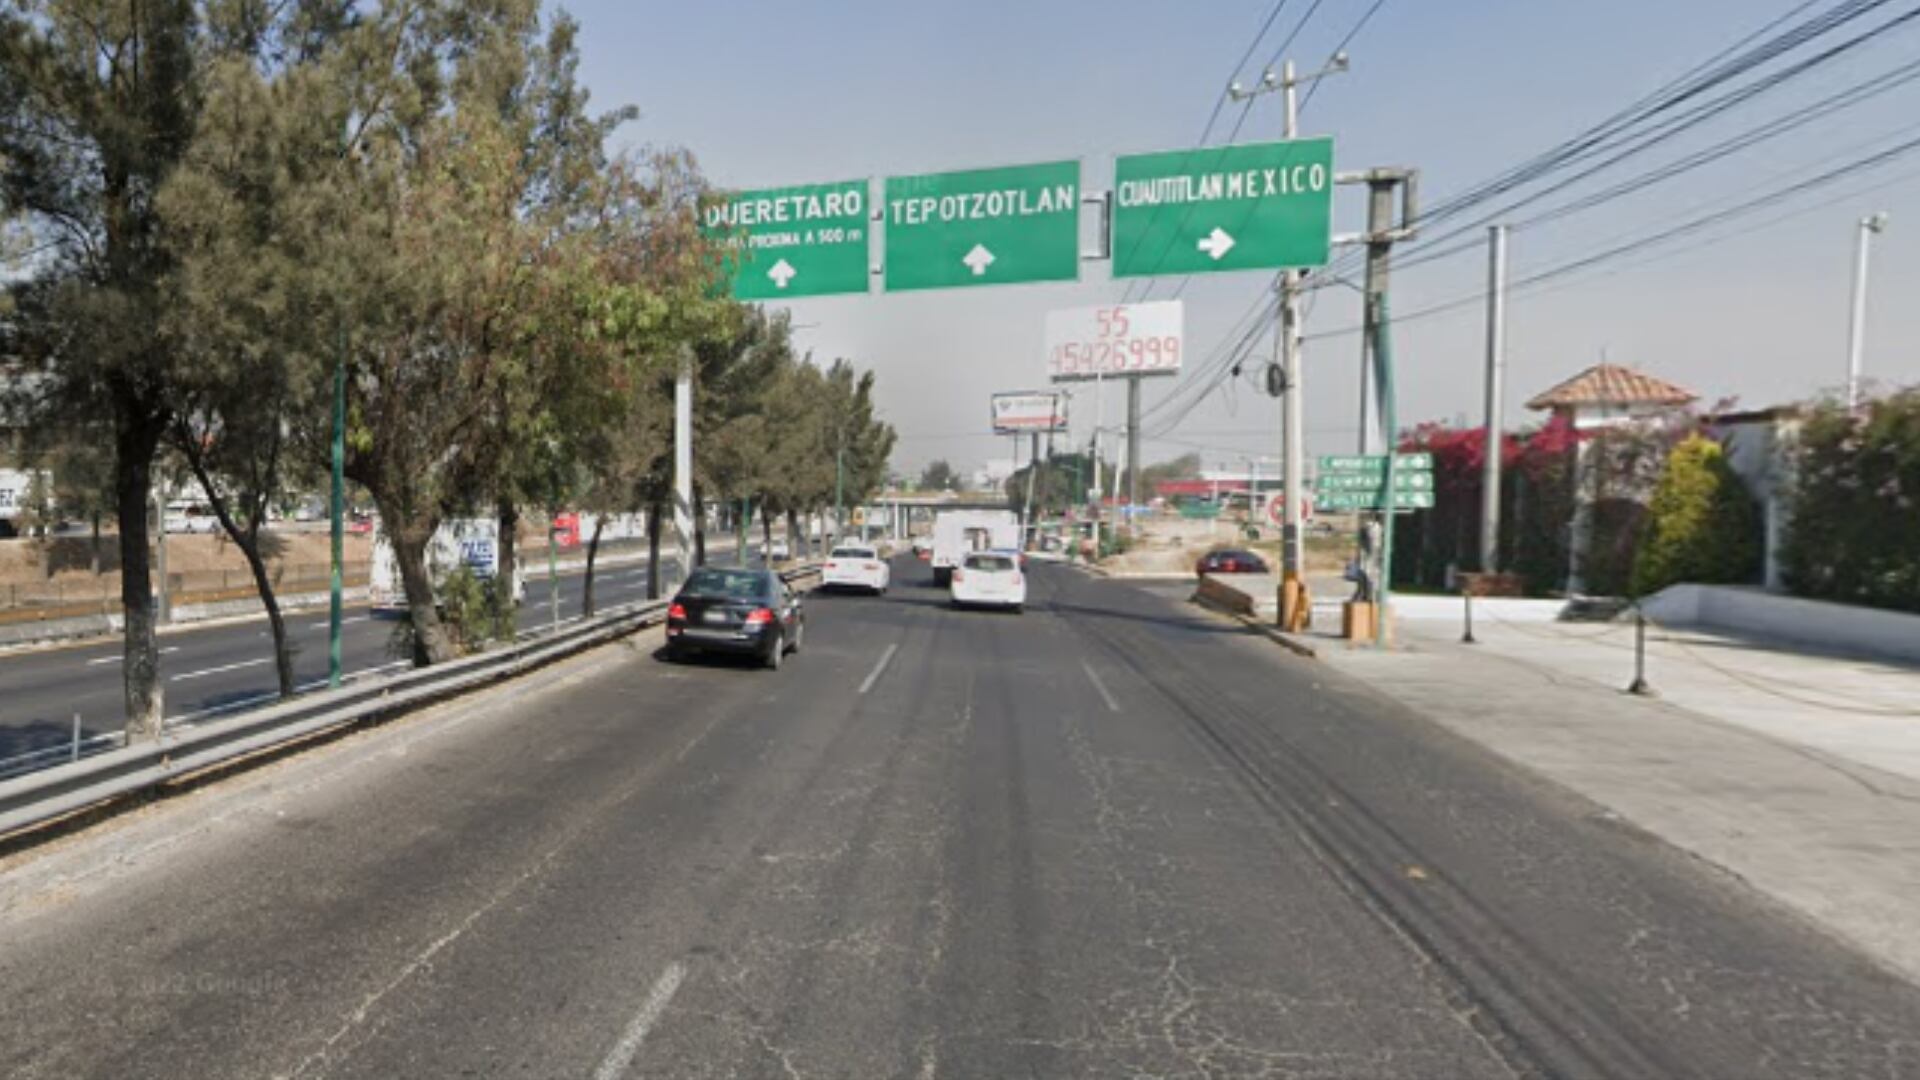 Foto ilustrativa de la México-Querétaro